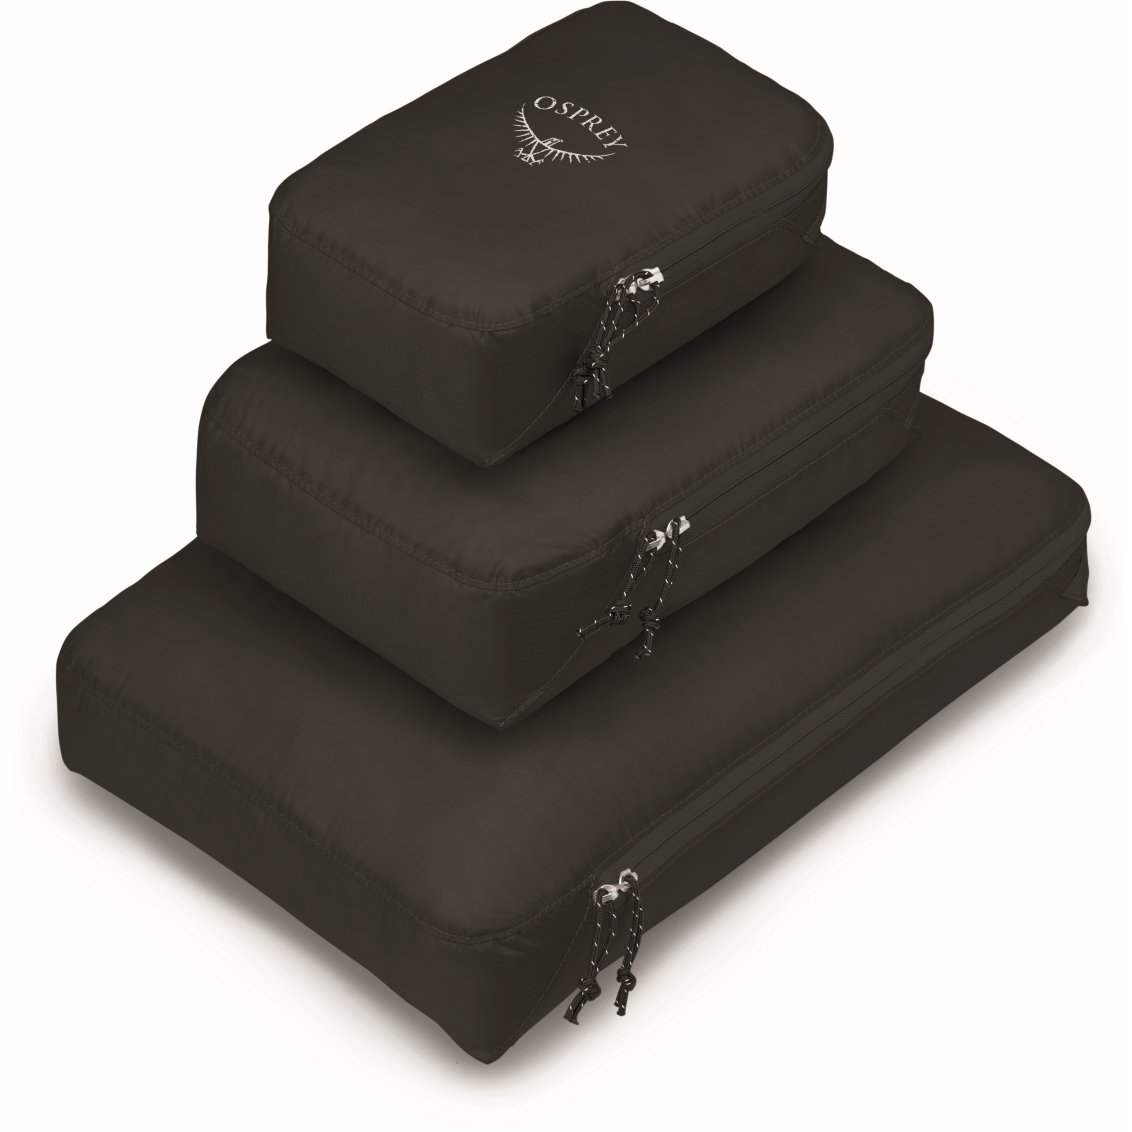 Produktbild von Osprey Ultralight Packing Cube Set S/M/L - Packtasche - Schwarz